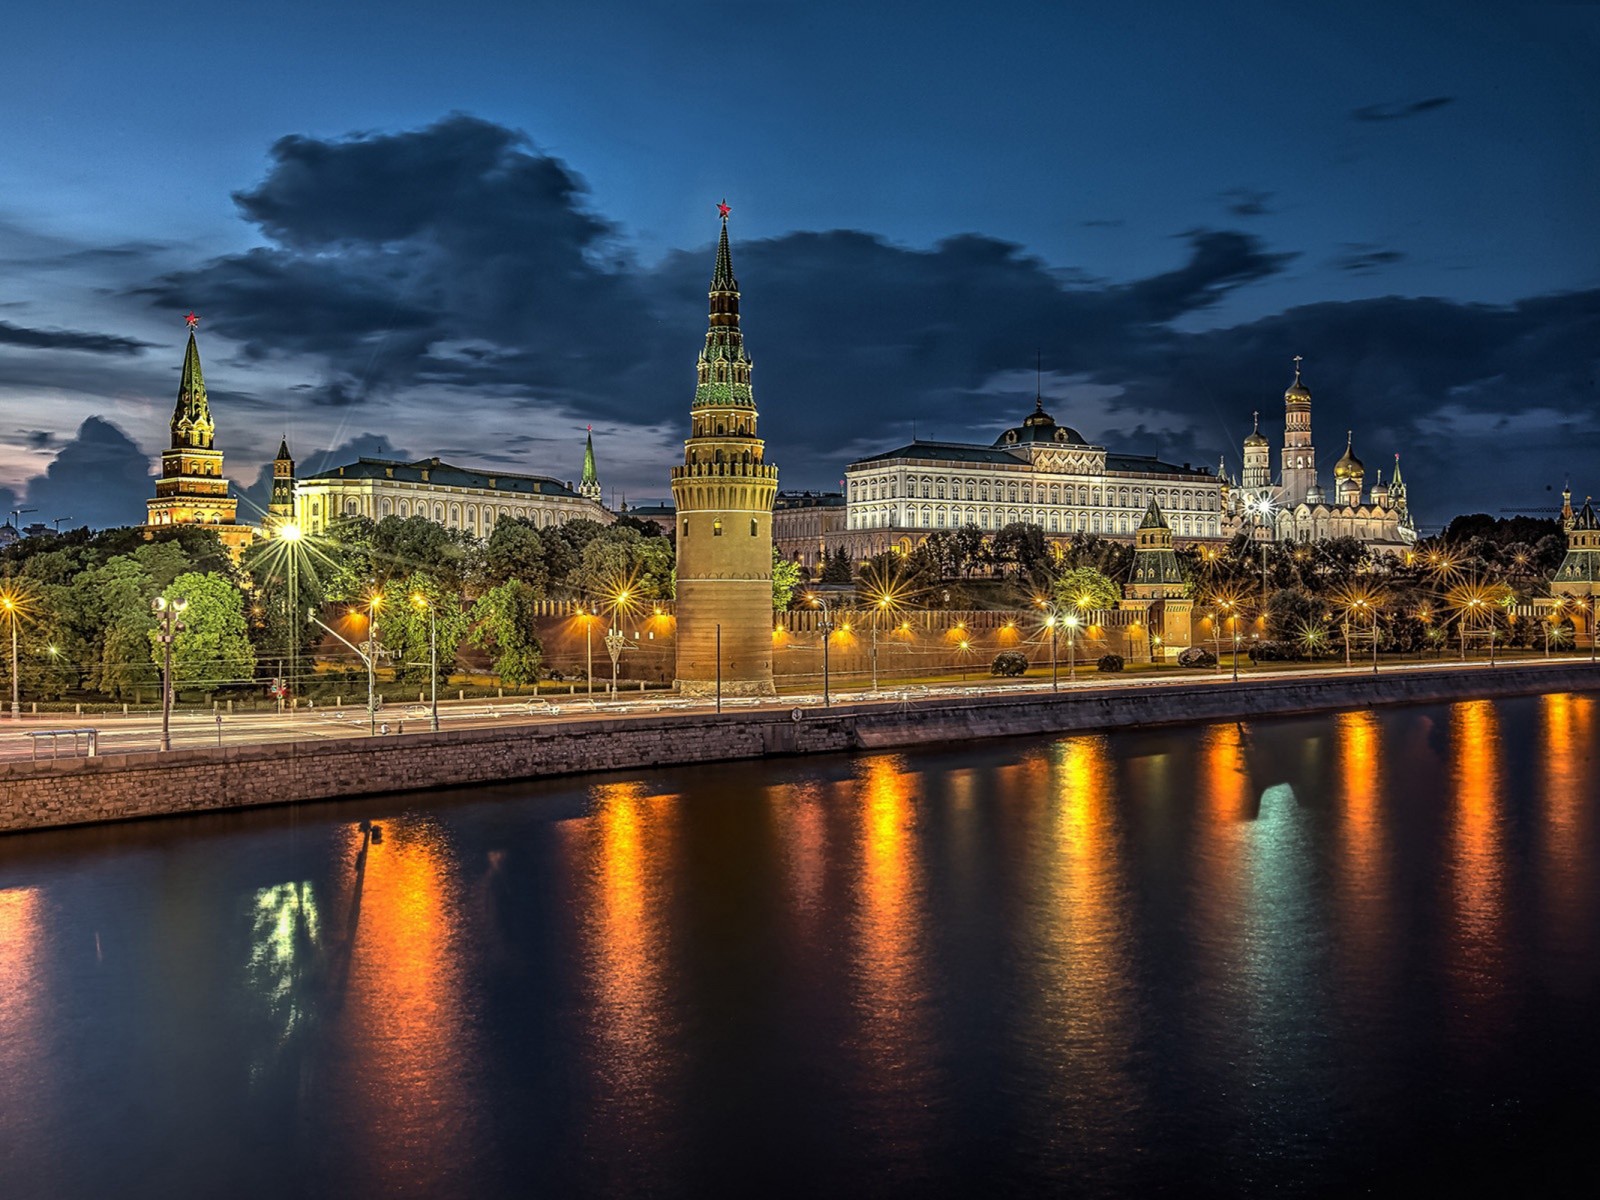 ロシアの壁紙,空,反射,自然,夜,都市の景観